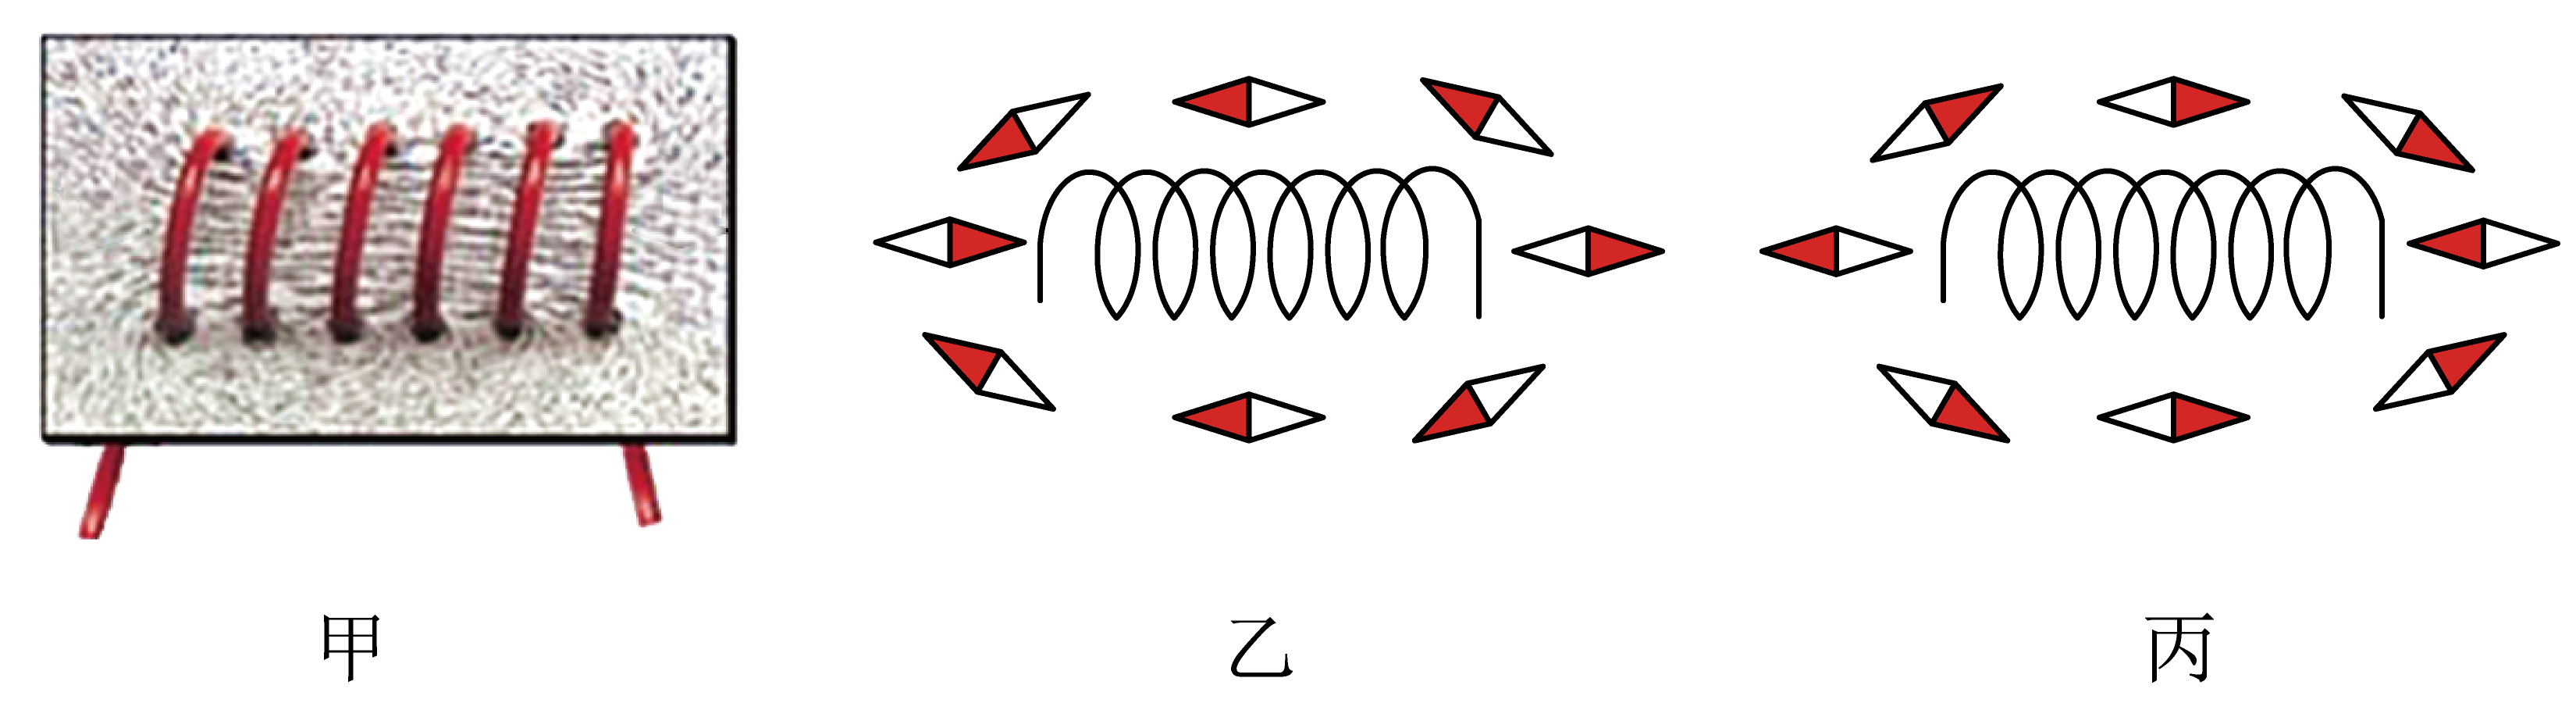 小明在探究通电螺线管的外部磁场实验中设计了如图乙所示的电路